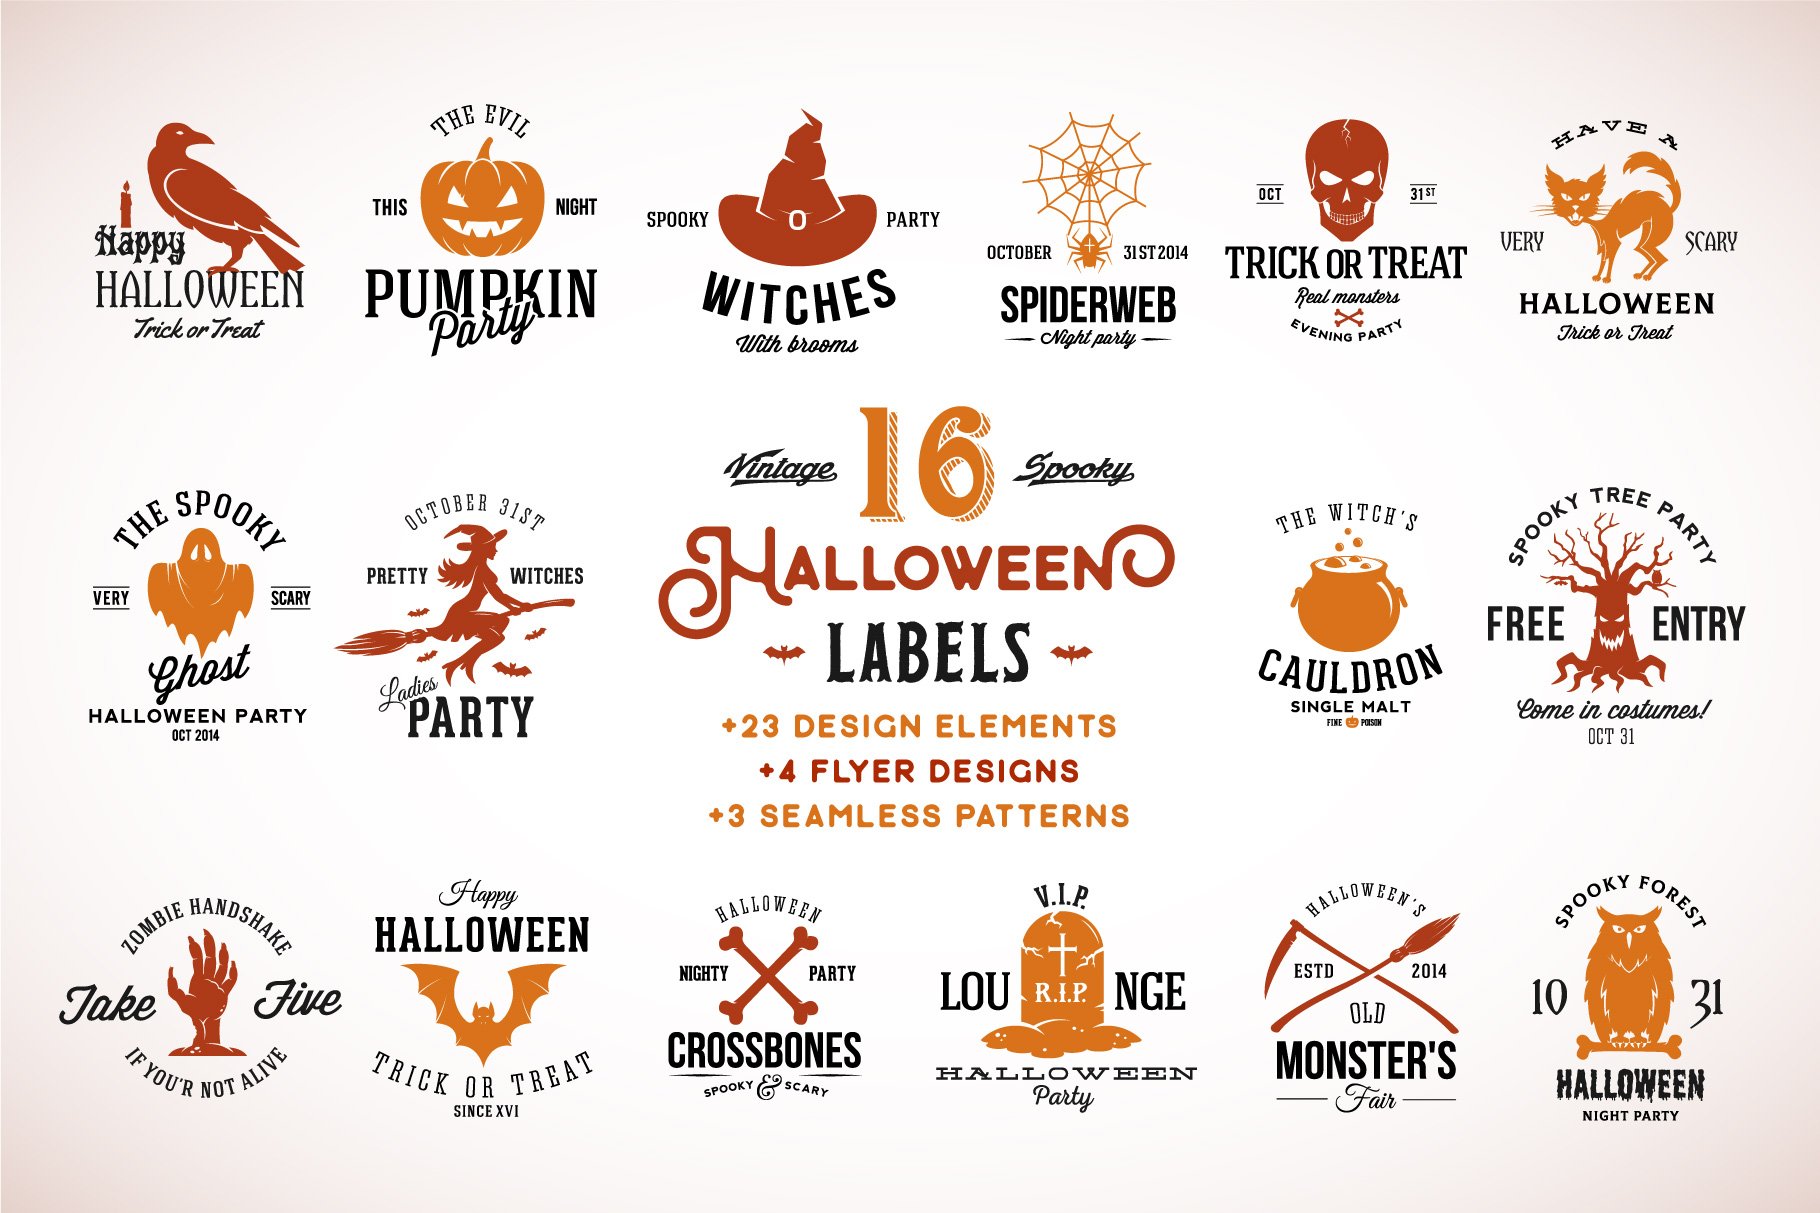 Halloween Vintage Labels Set cover image.